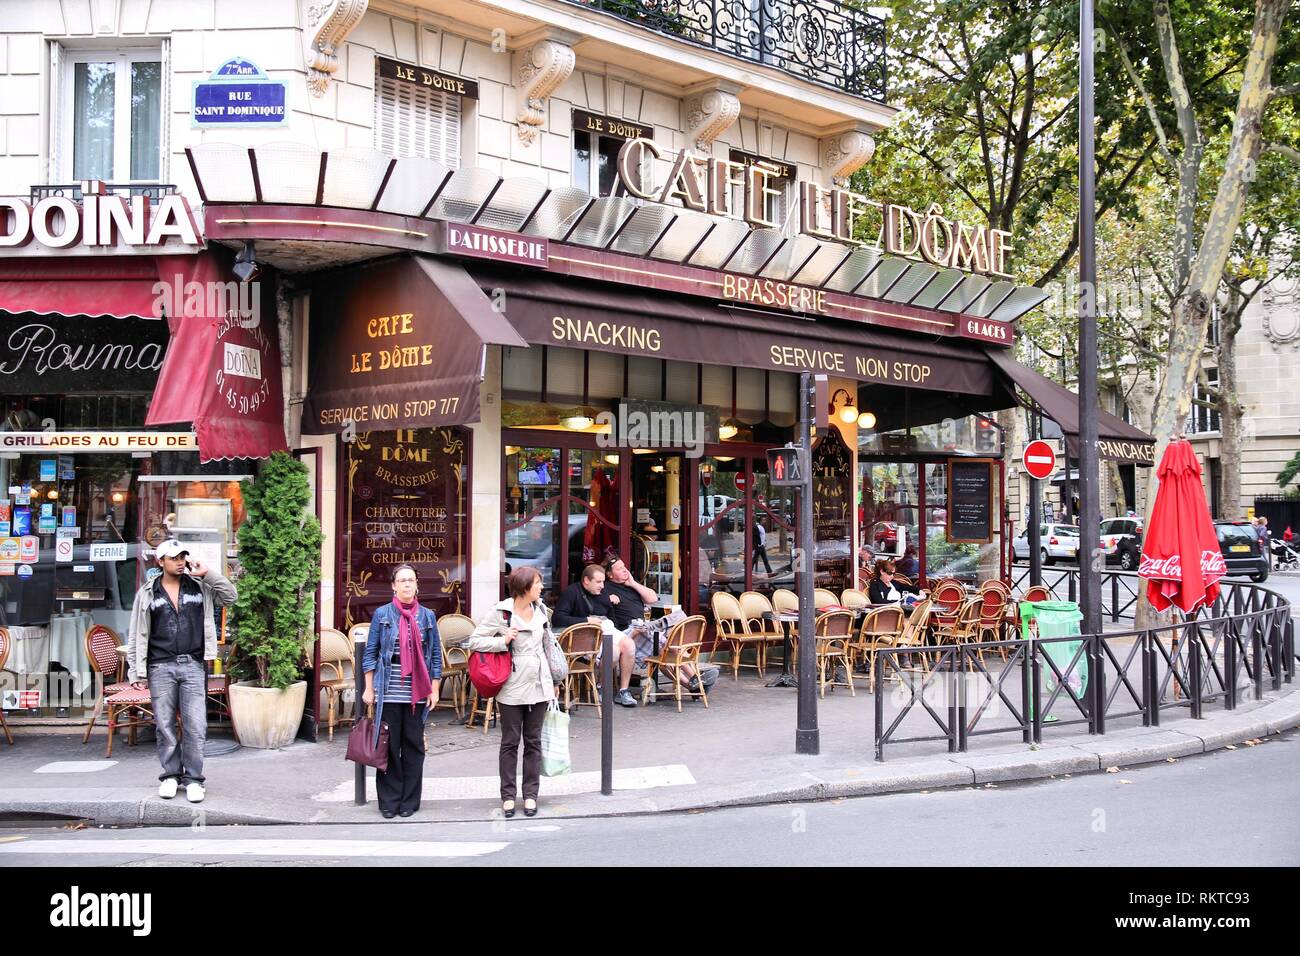 PARIS - 21 juillet : personnes visitent Cafe Le Dome le 21 juillet 2011 à Paris, France. Le Dome Café est un établissement typique de Paris, l'un des plus grand metrop Banque D'Images